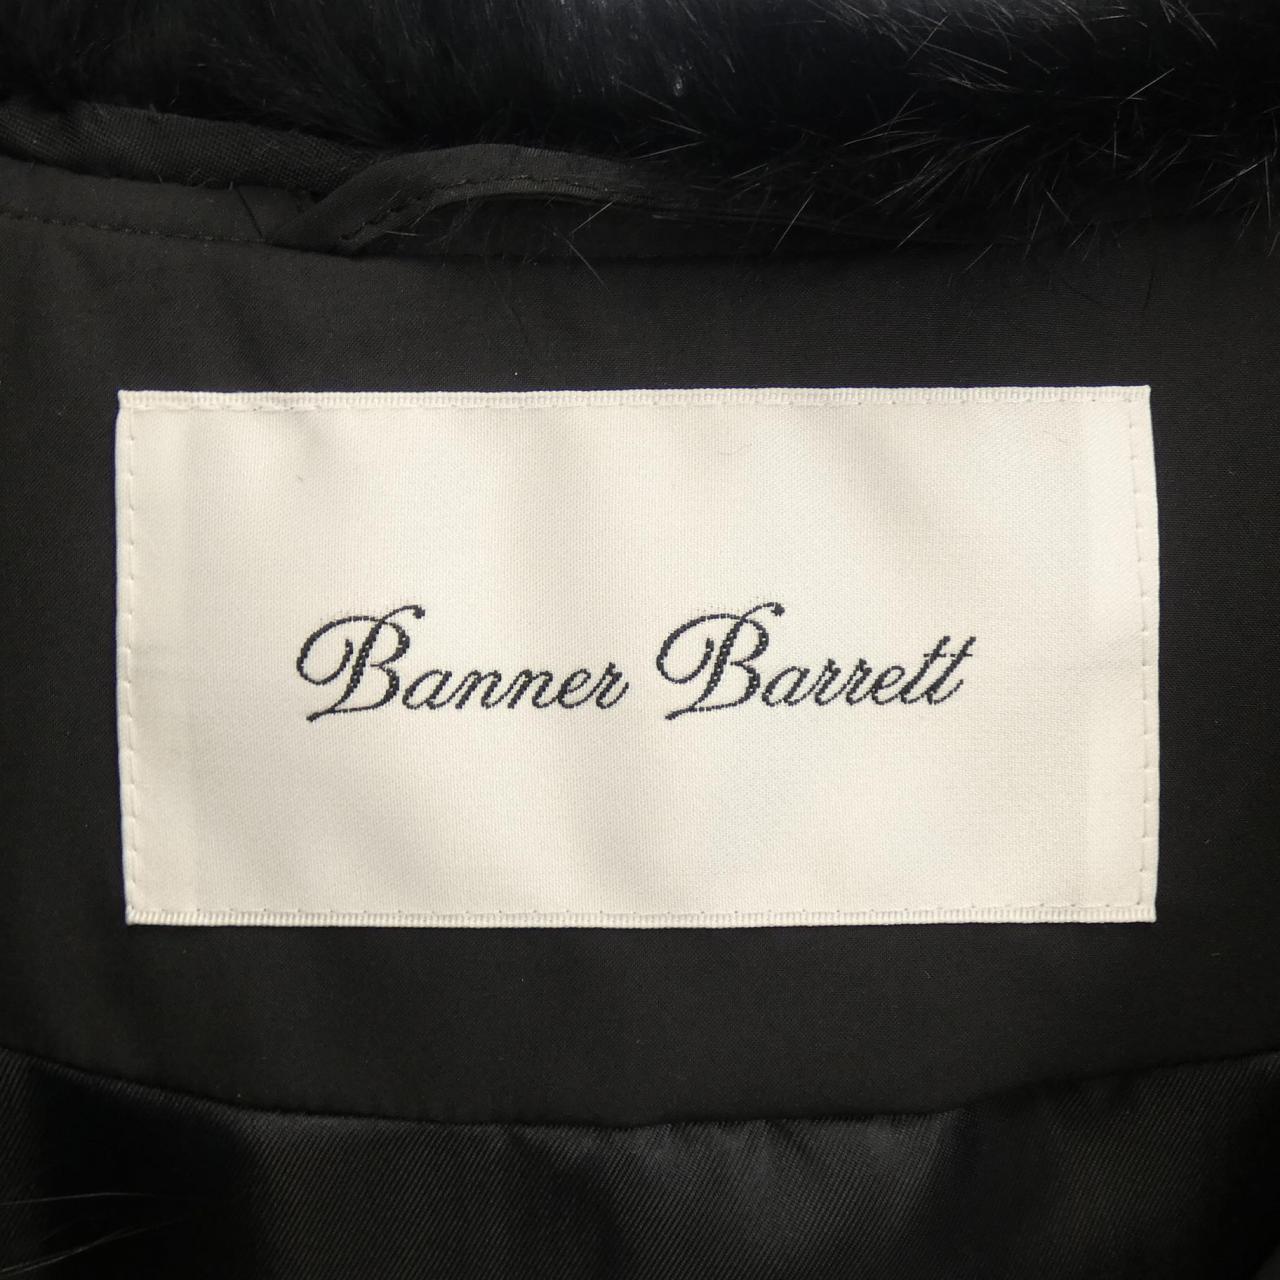 KOMEHYO |Banner Barrett Coat|Banner Barrett|Women's Fashion